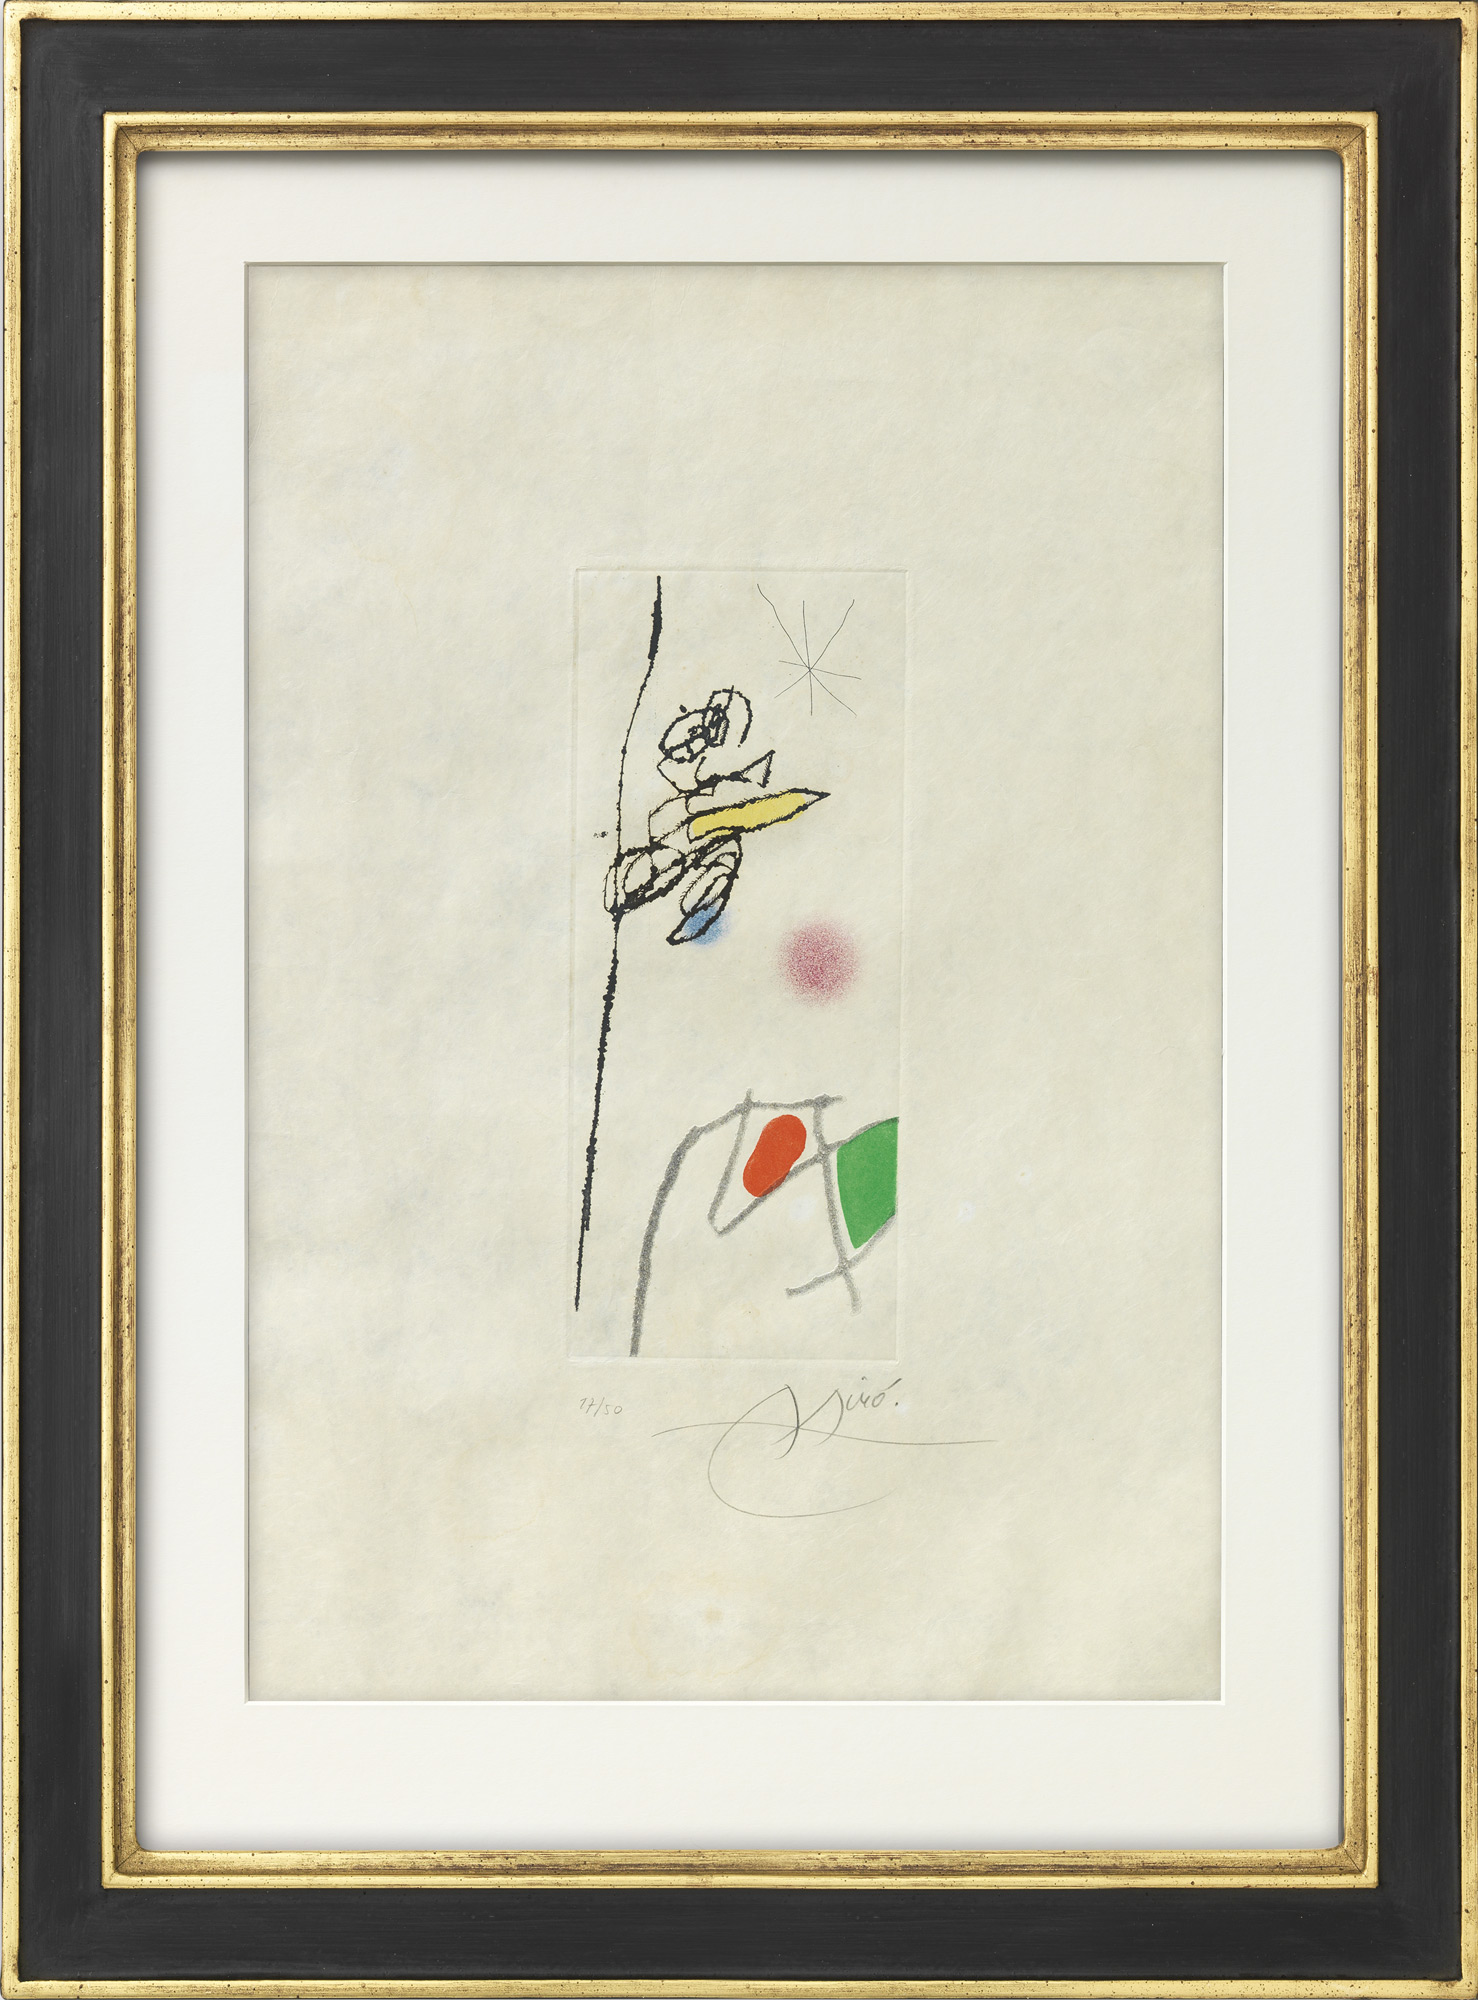 Bild "Le Rossignol effronte" (1972) von Joan Miró